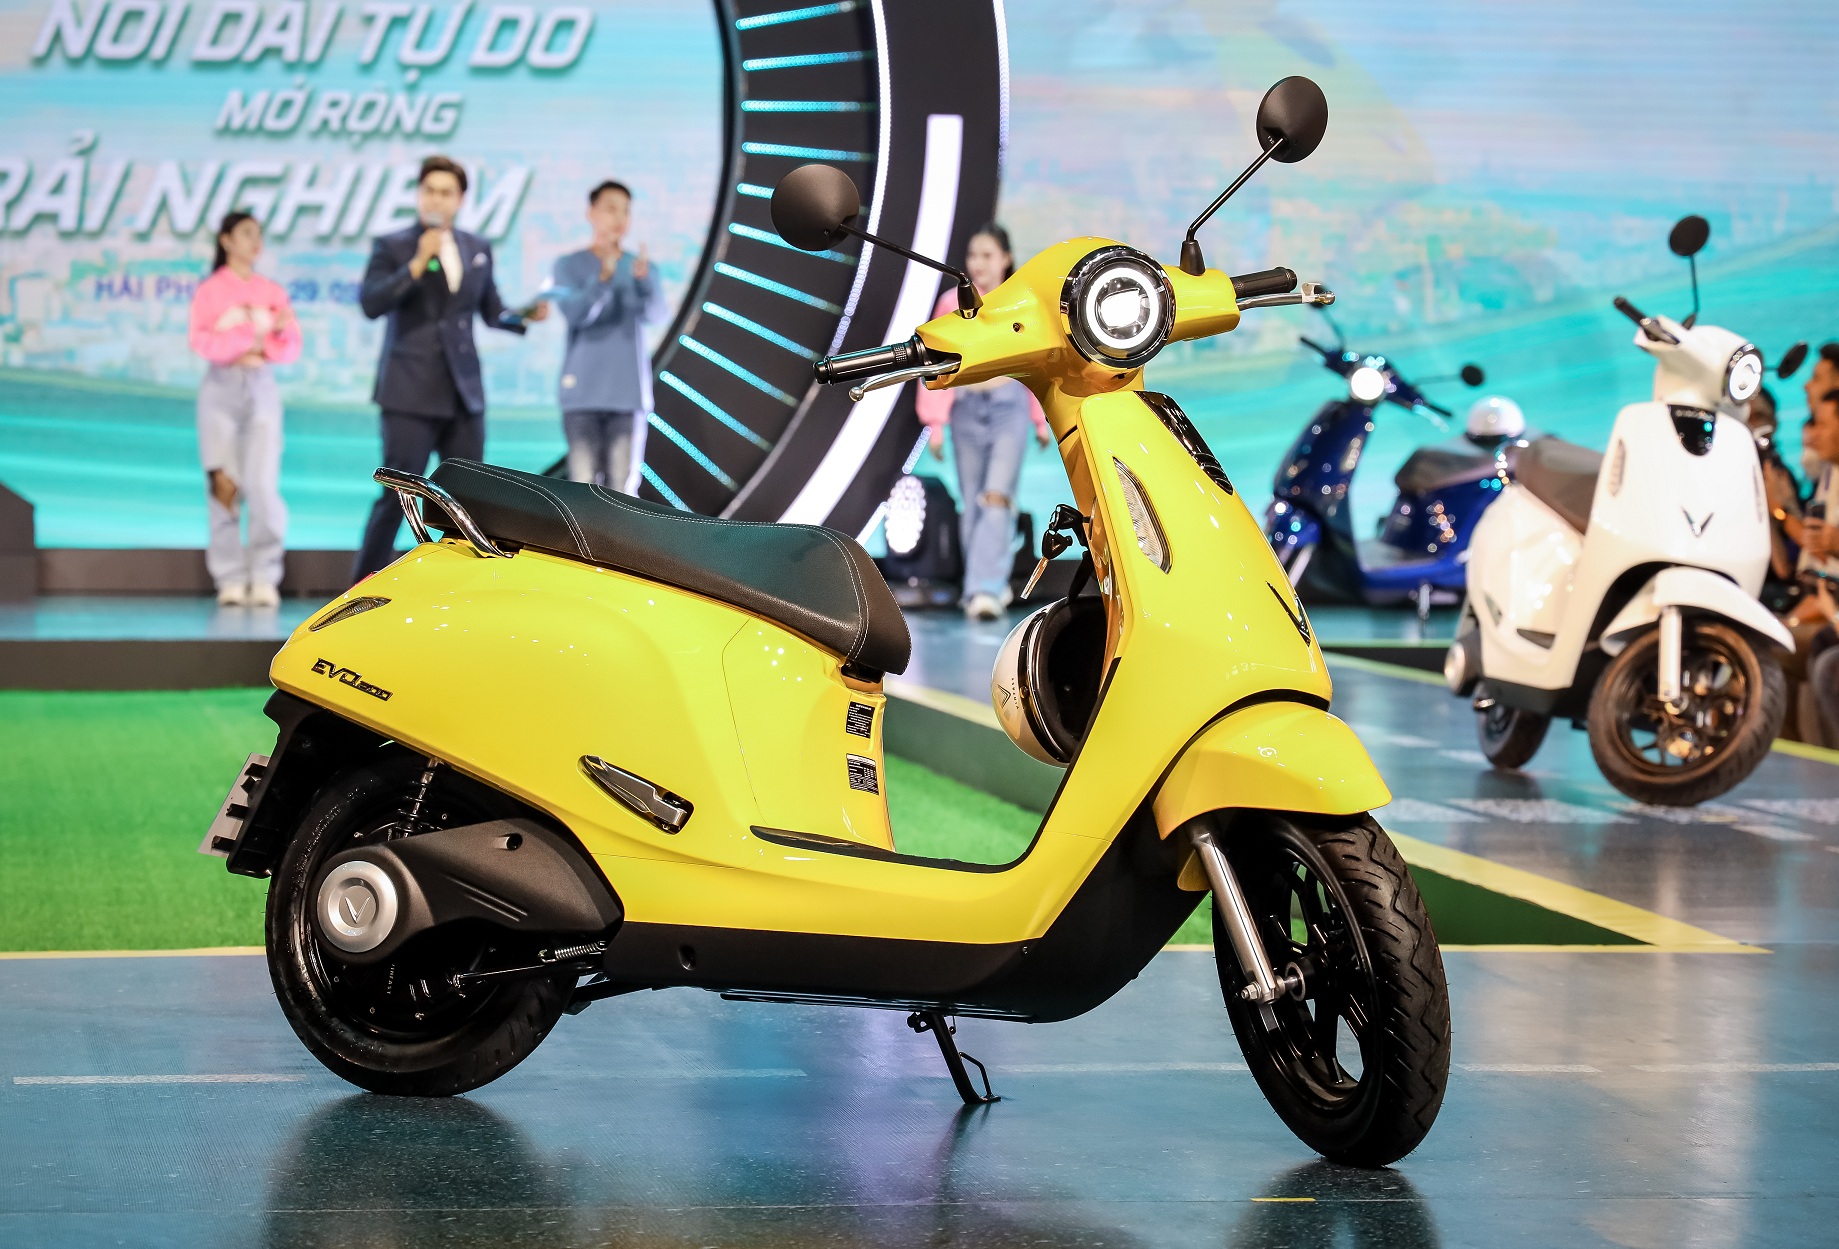 Cận cảnh mẫu xe máy điện Evo200 do chính người Việt thiết kế